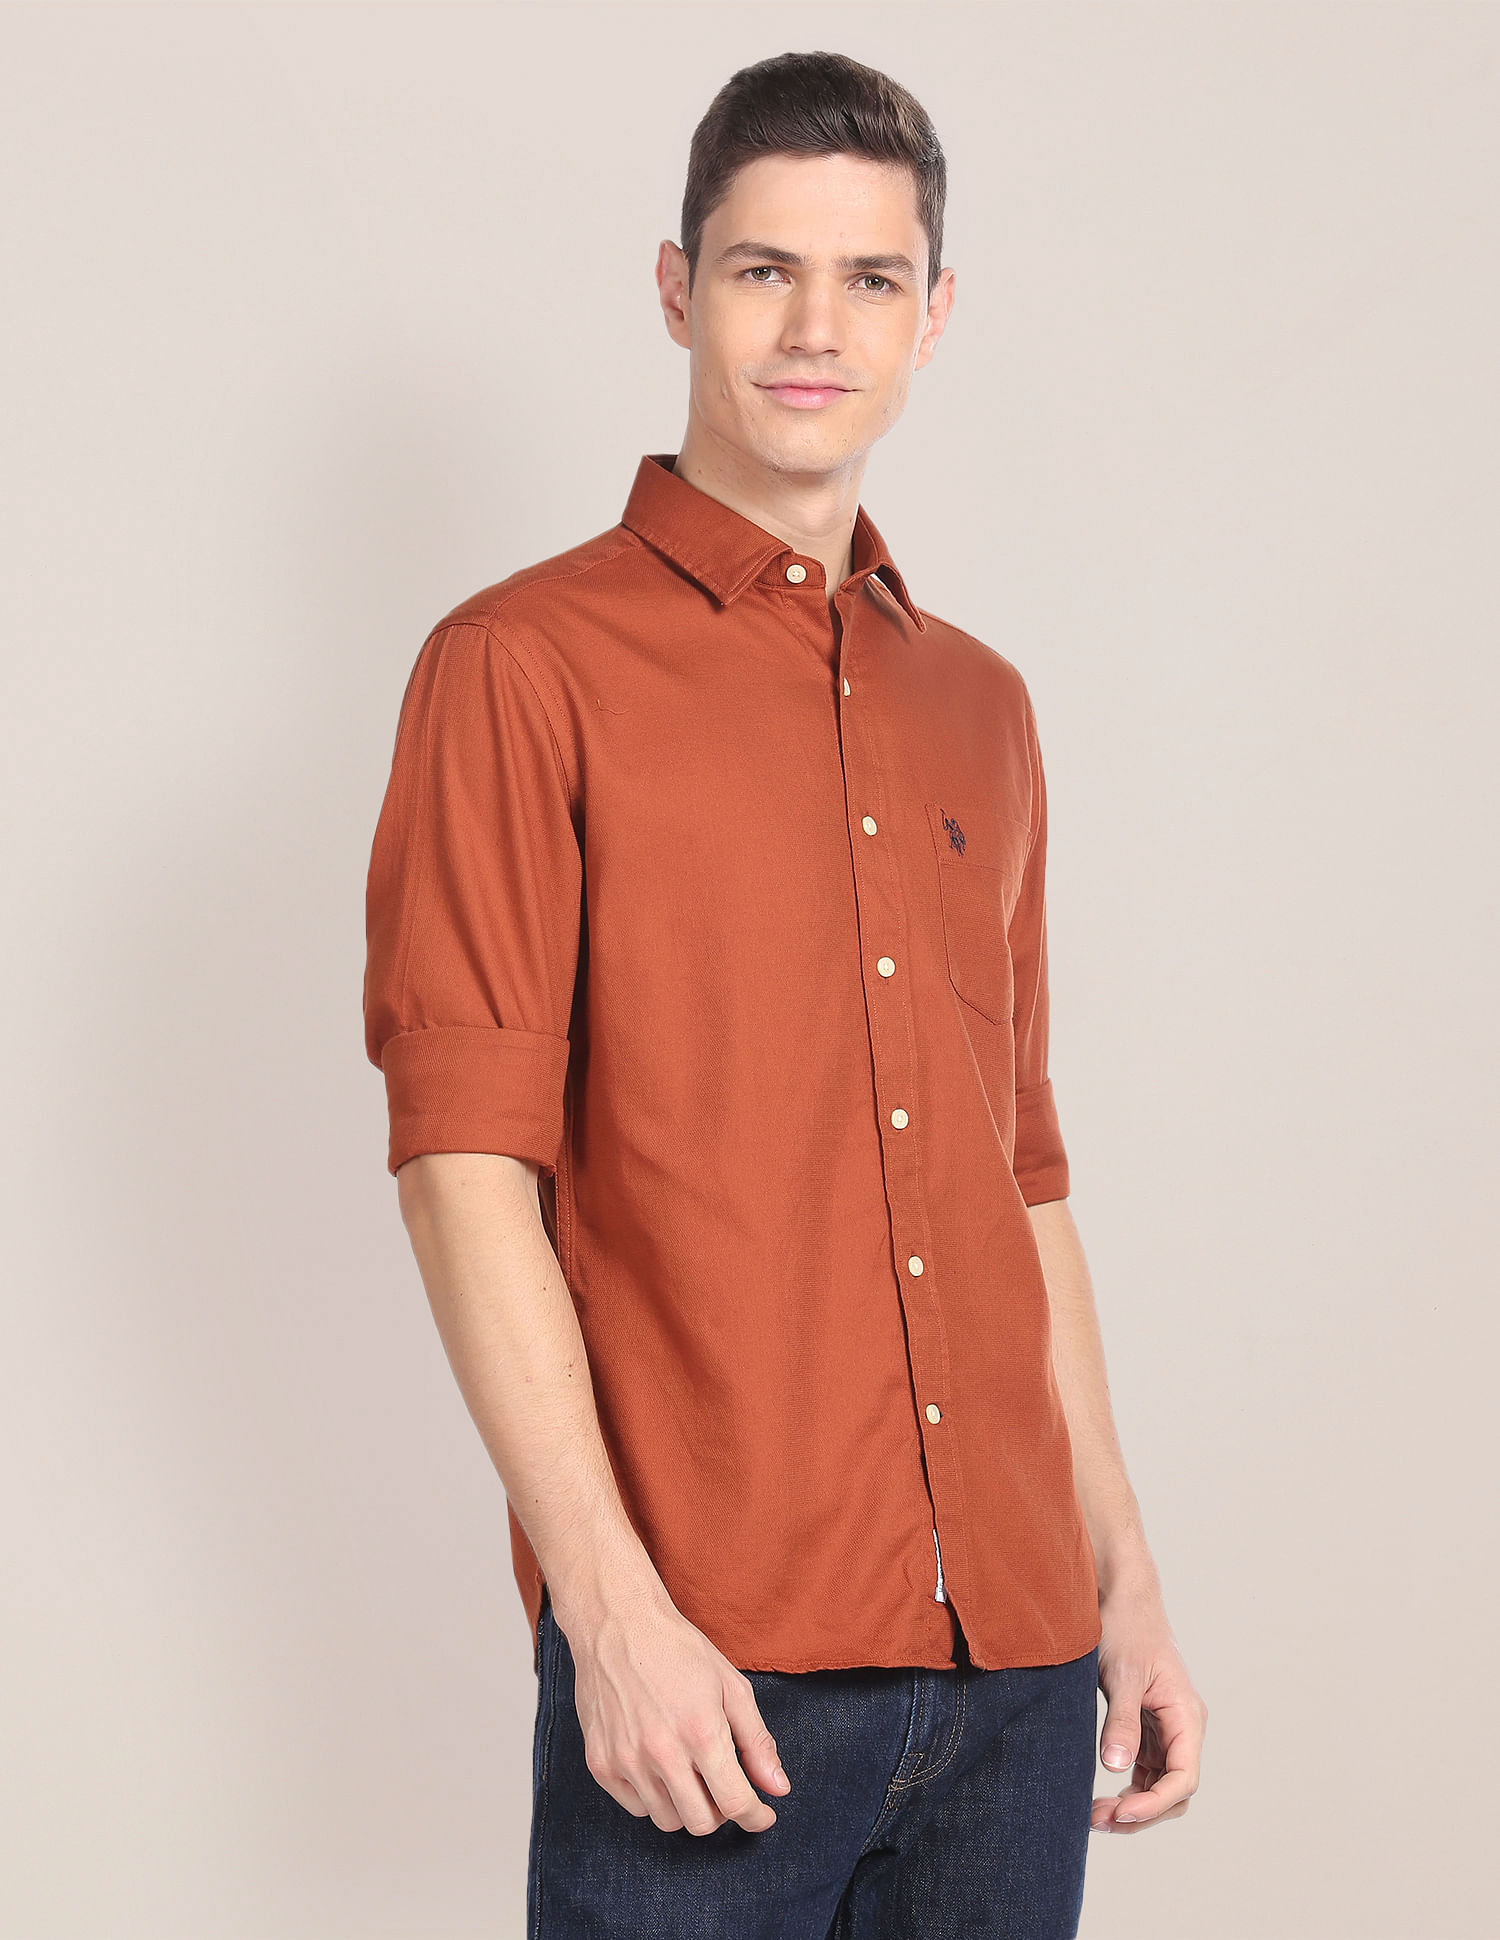 Buy HUK Youth Kryptek Icon Long Sleeve Shirt at Ubuy India